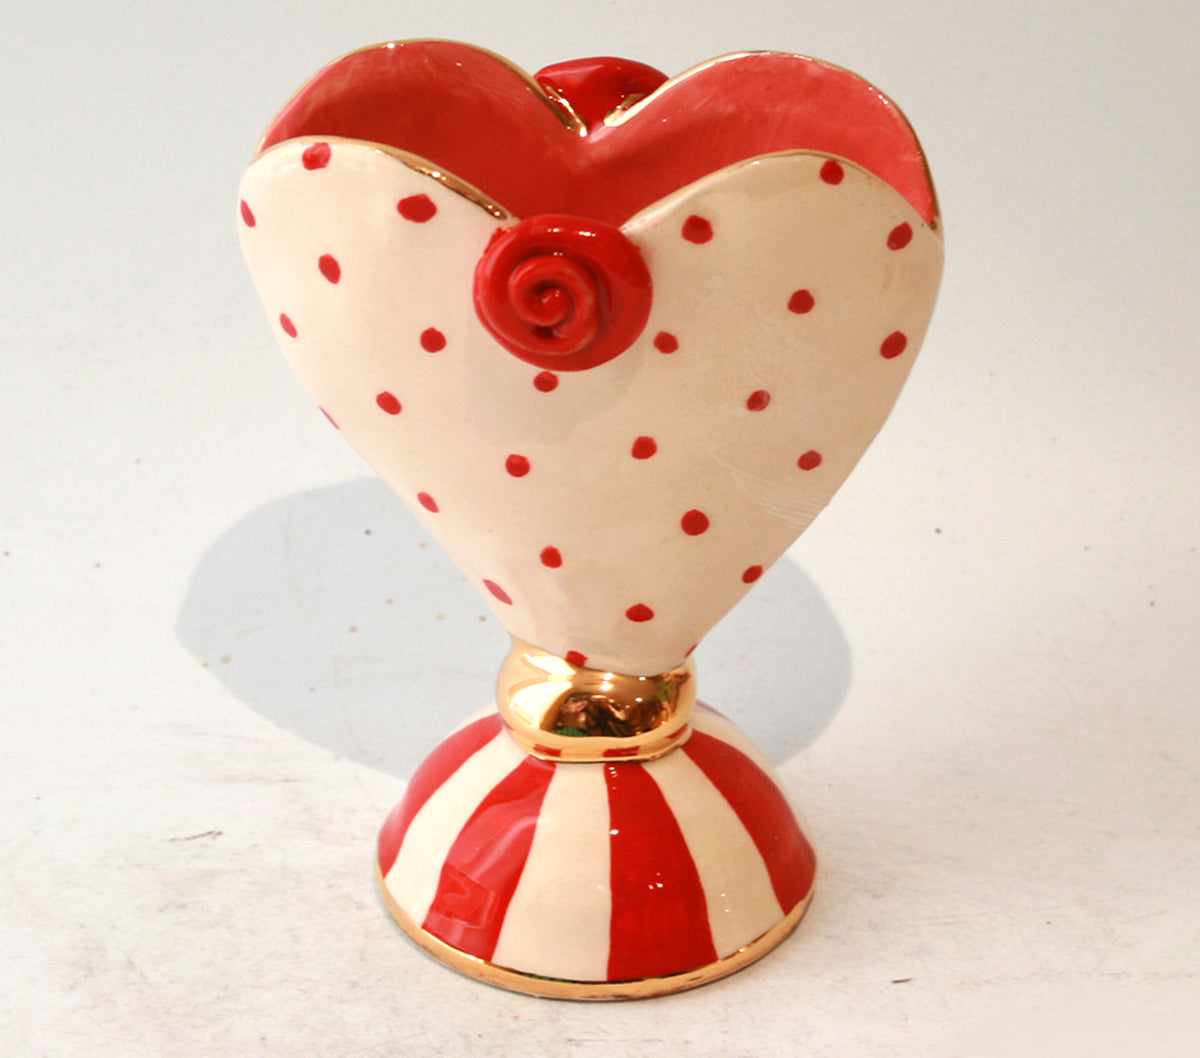 Baby Heart Vase in Red Polka